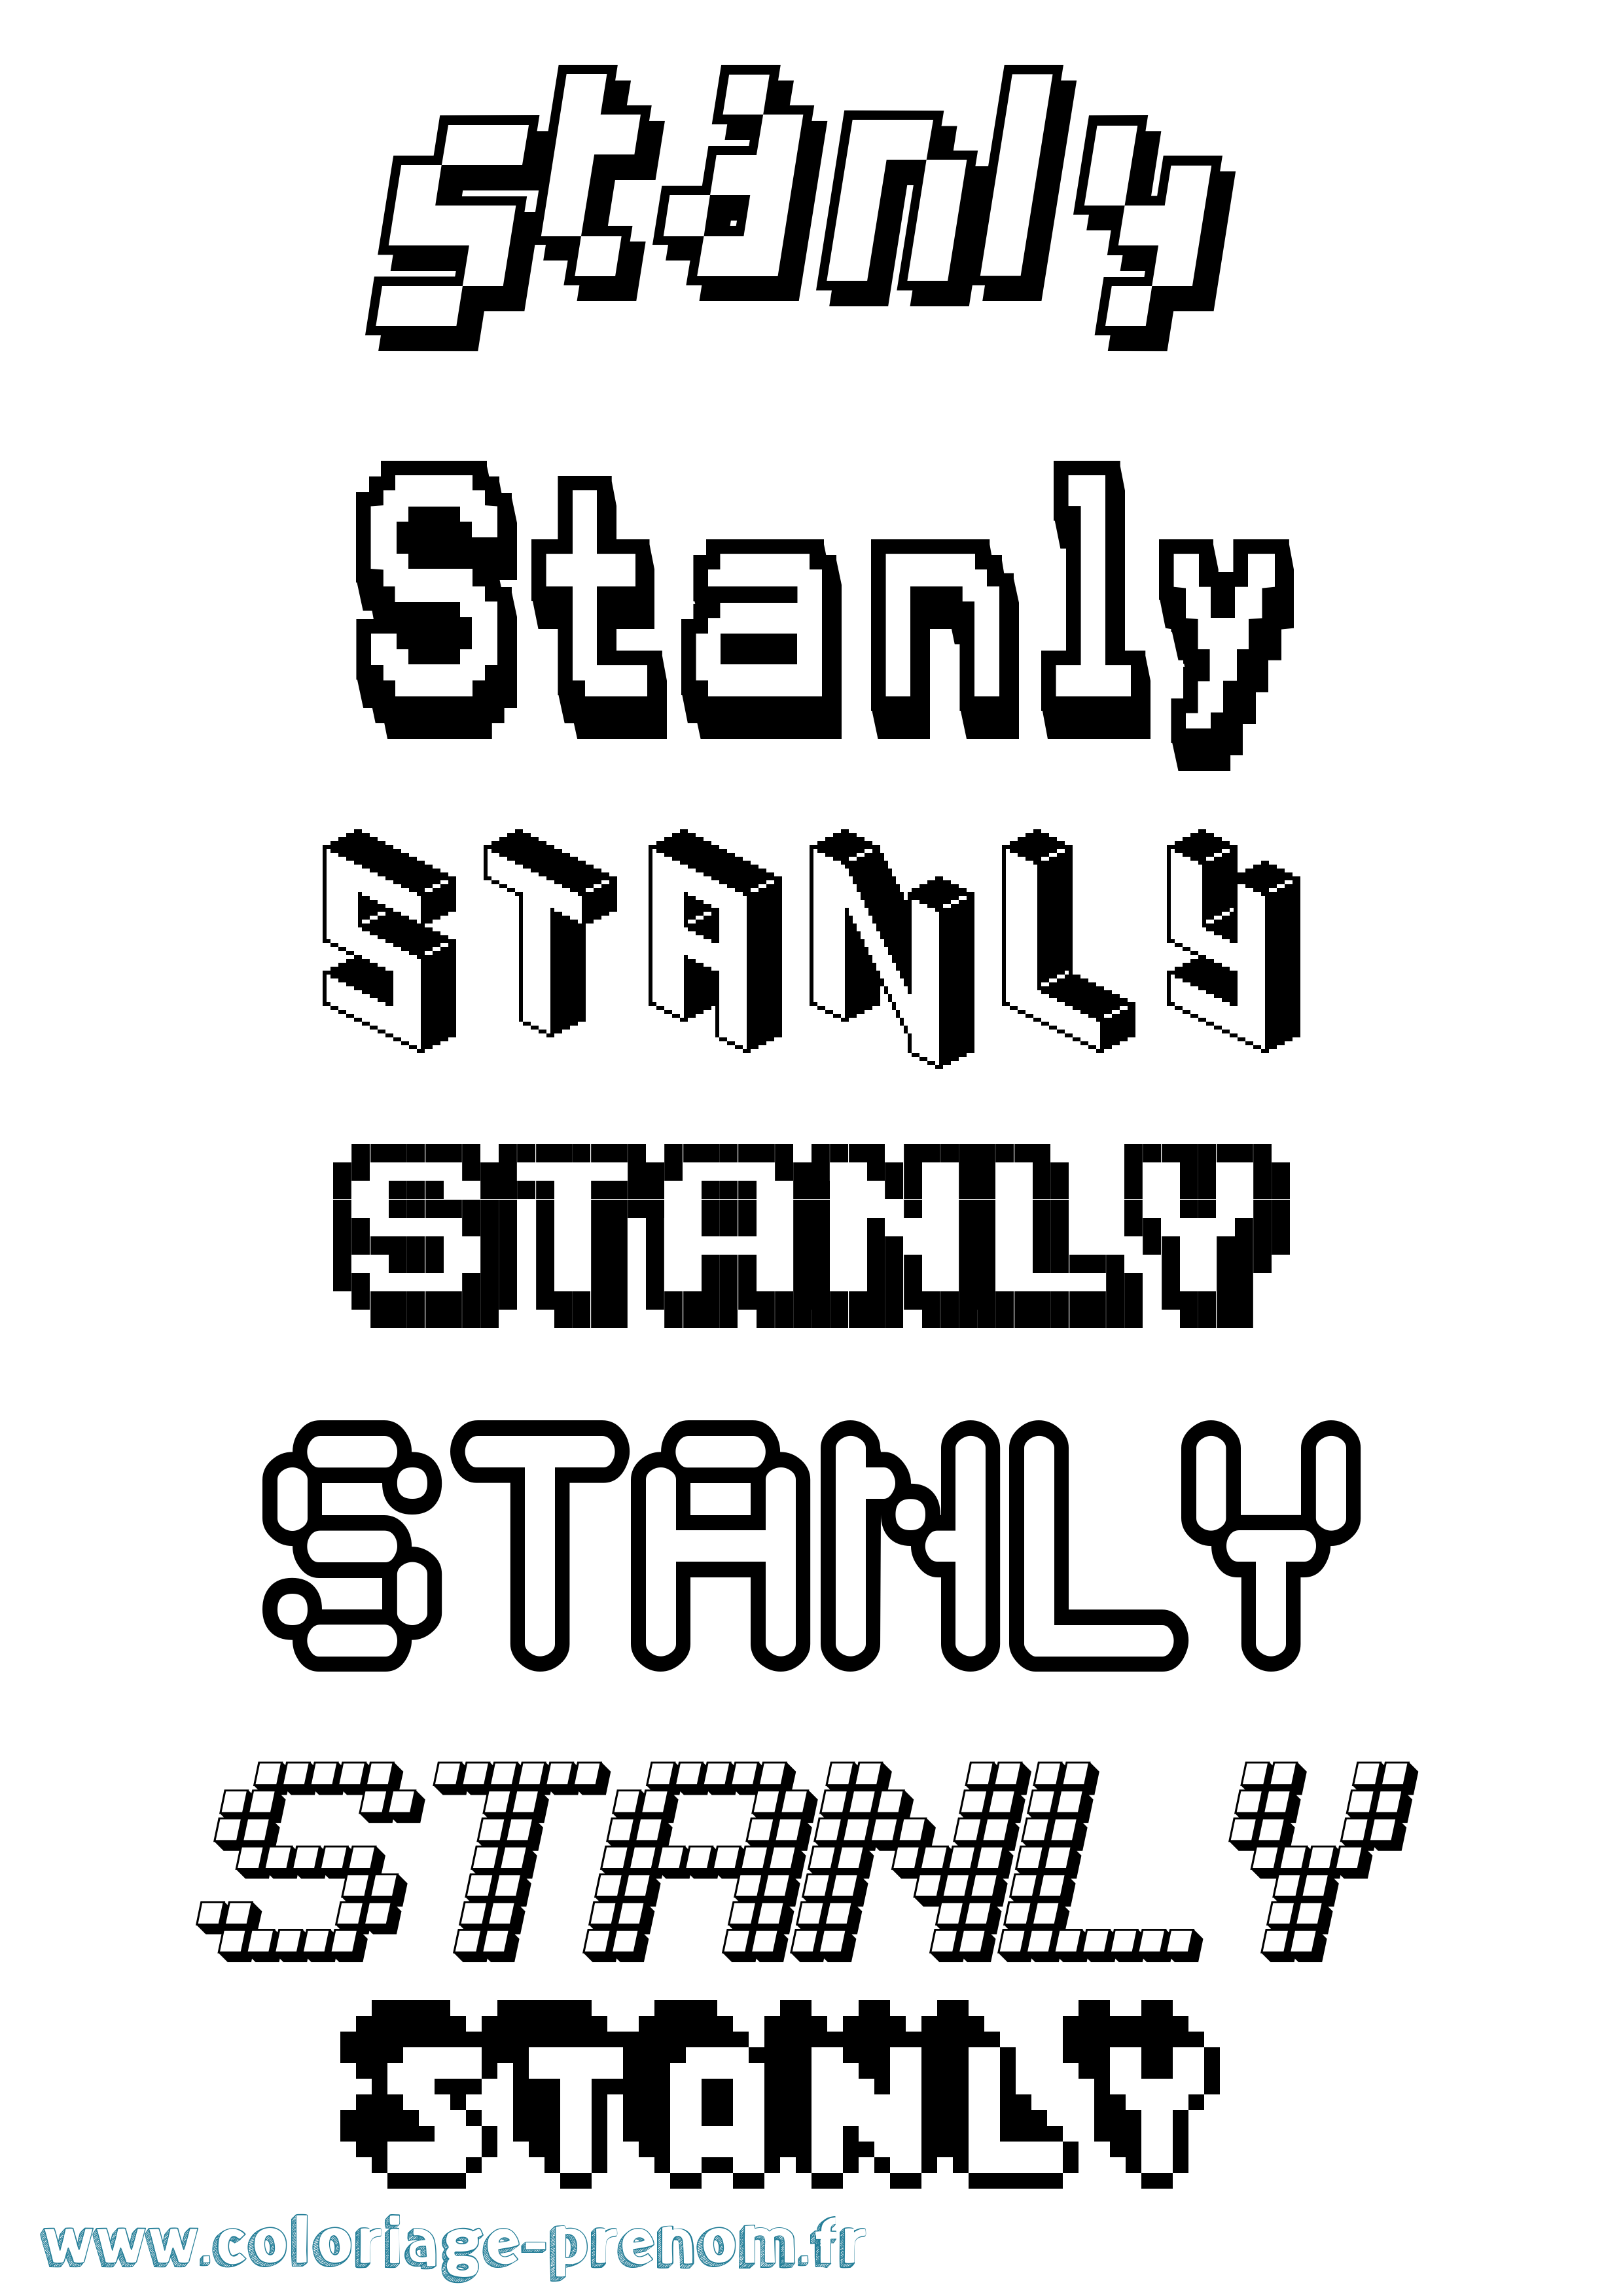 Coloriage prénom Stanly Pixel